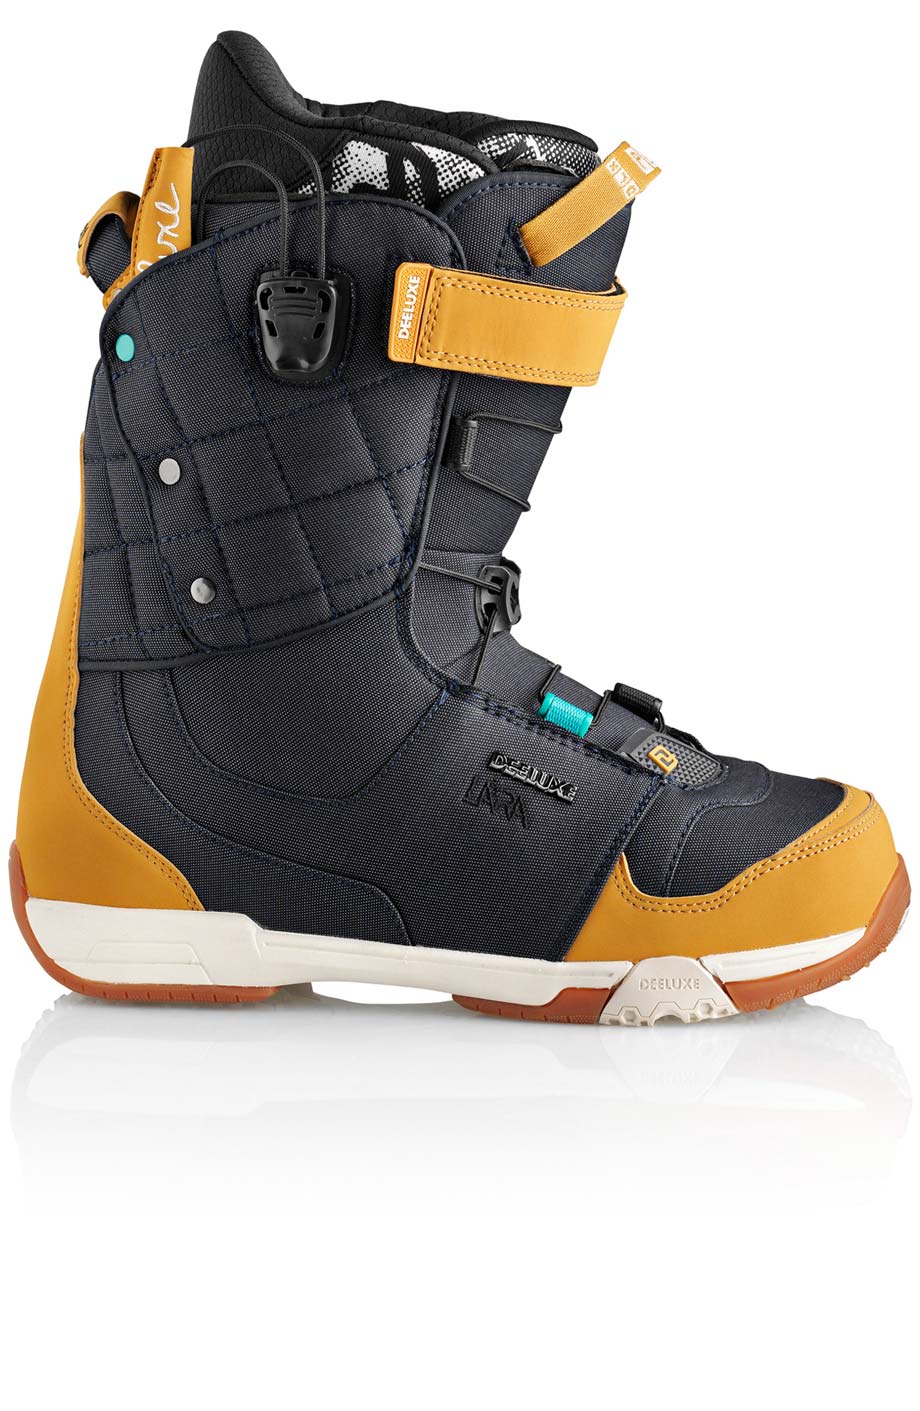 Ботинки сноубордические Deeluxe Ray Lara  размер 25,5 denim (темный джинс + беж кож.зам) 2013 год фото 